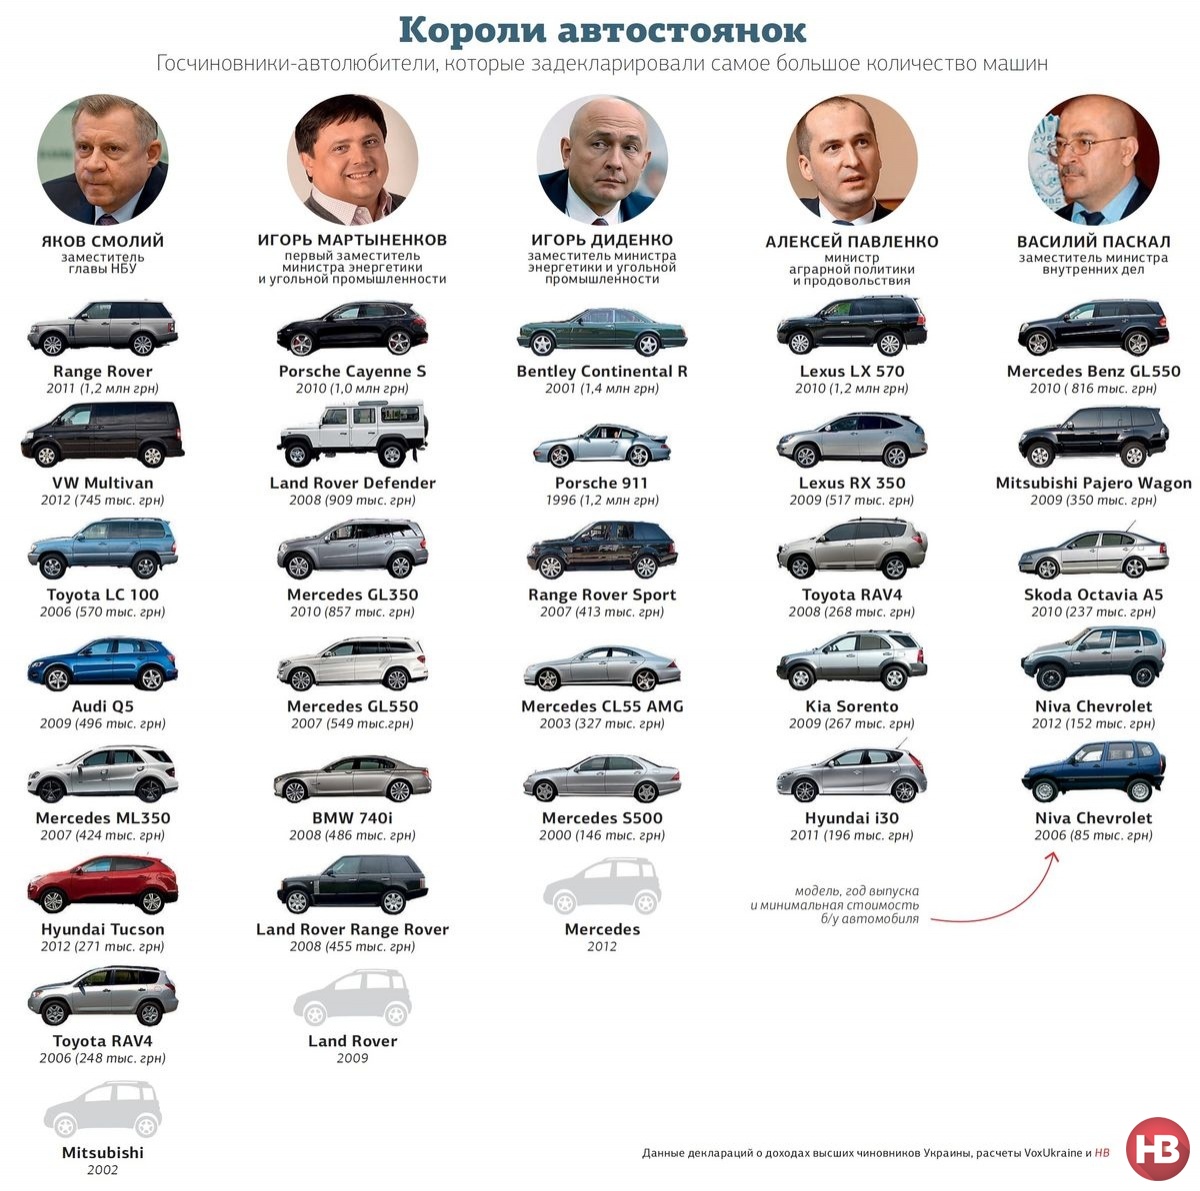 Личные автопарки украинских чиновников